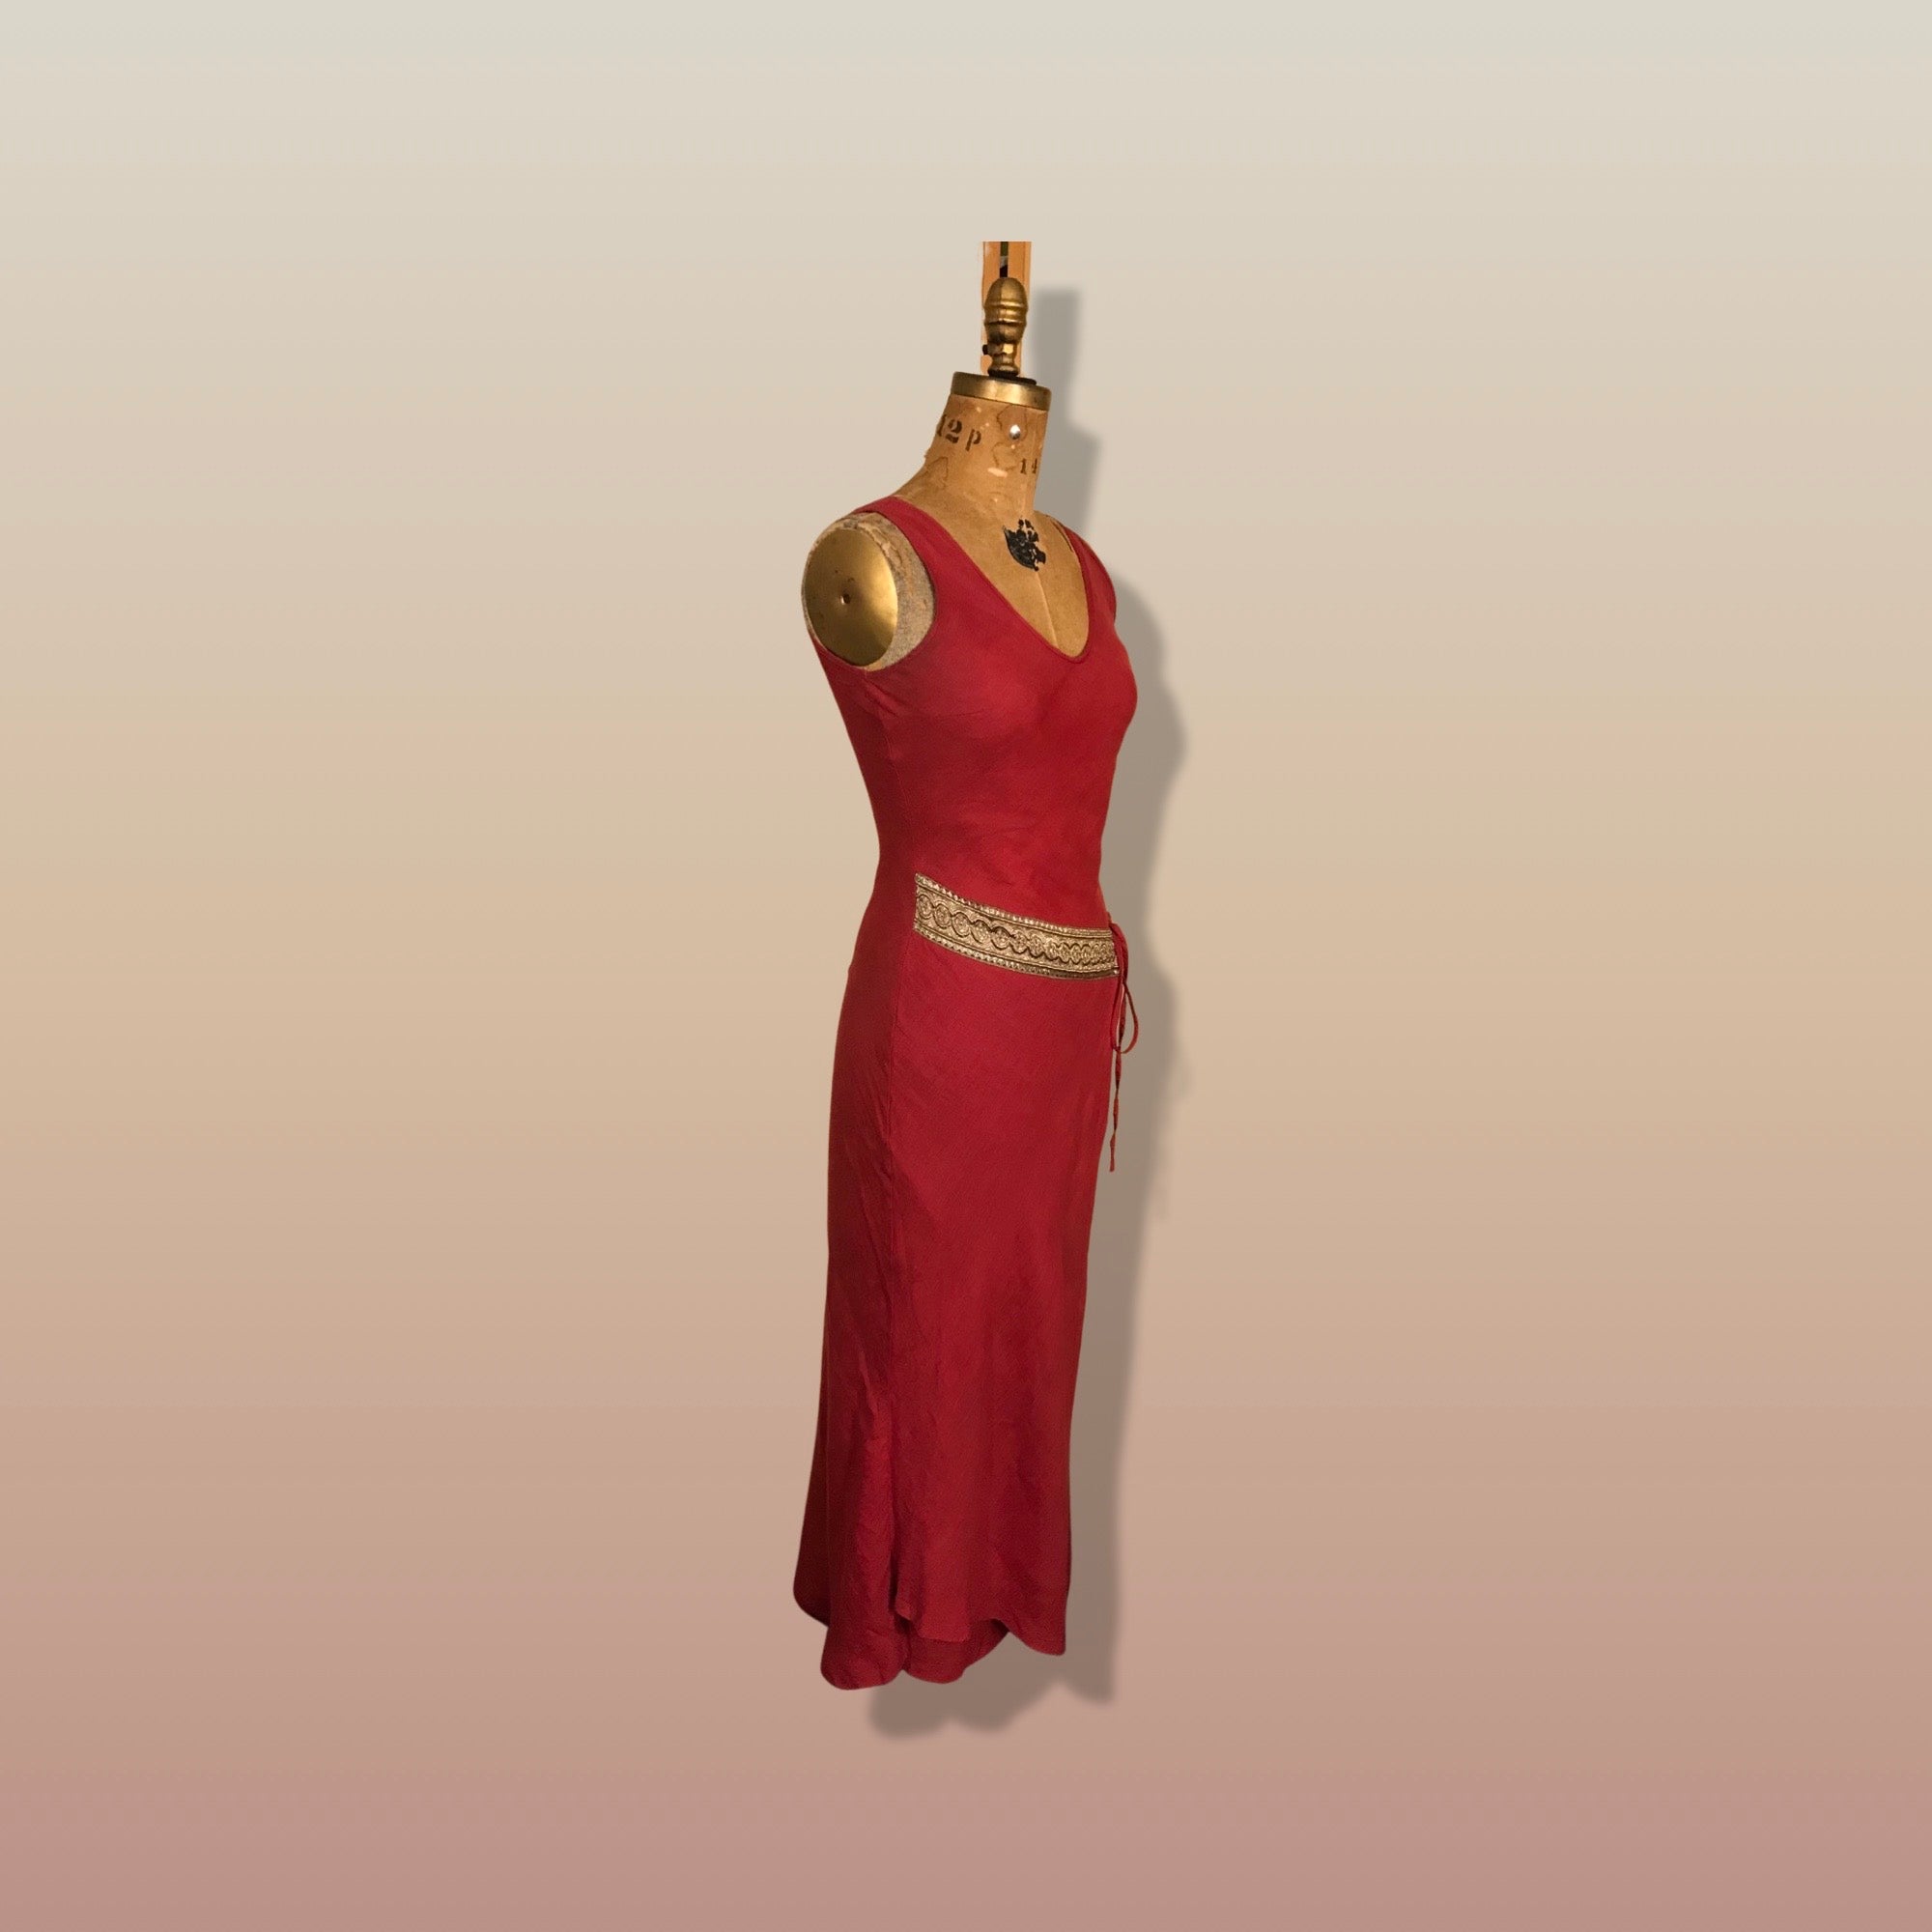 Herren Gladiator Kleid Festive Cosplay Mythology Alte Römische Robe  Karneval | eBay